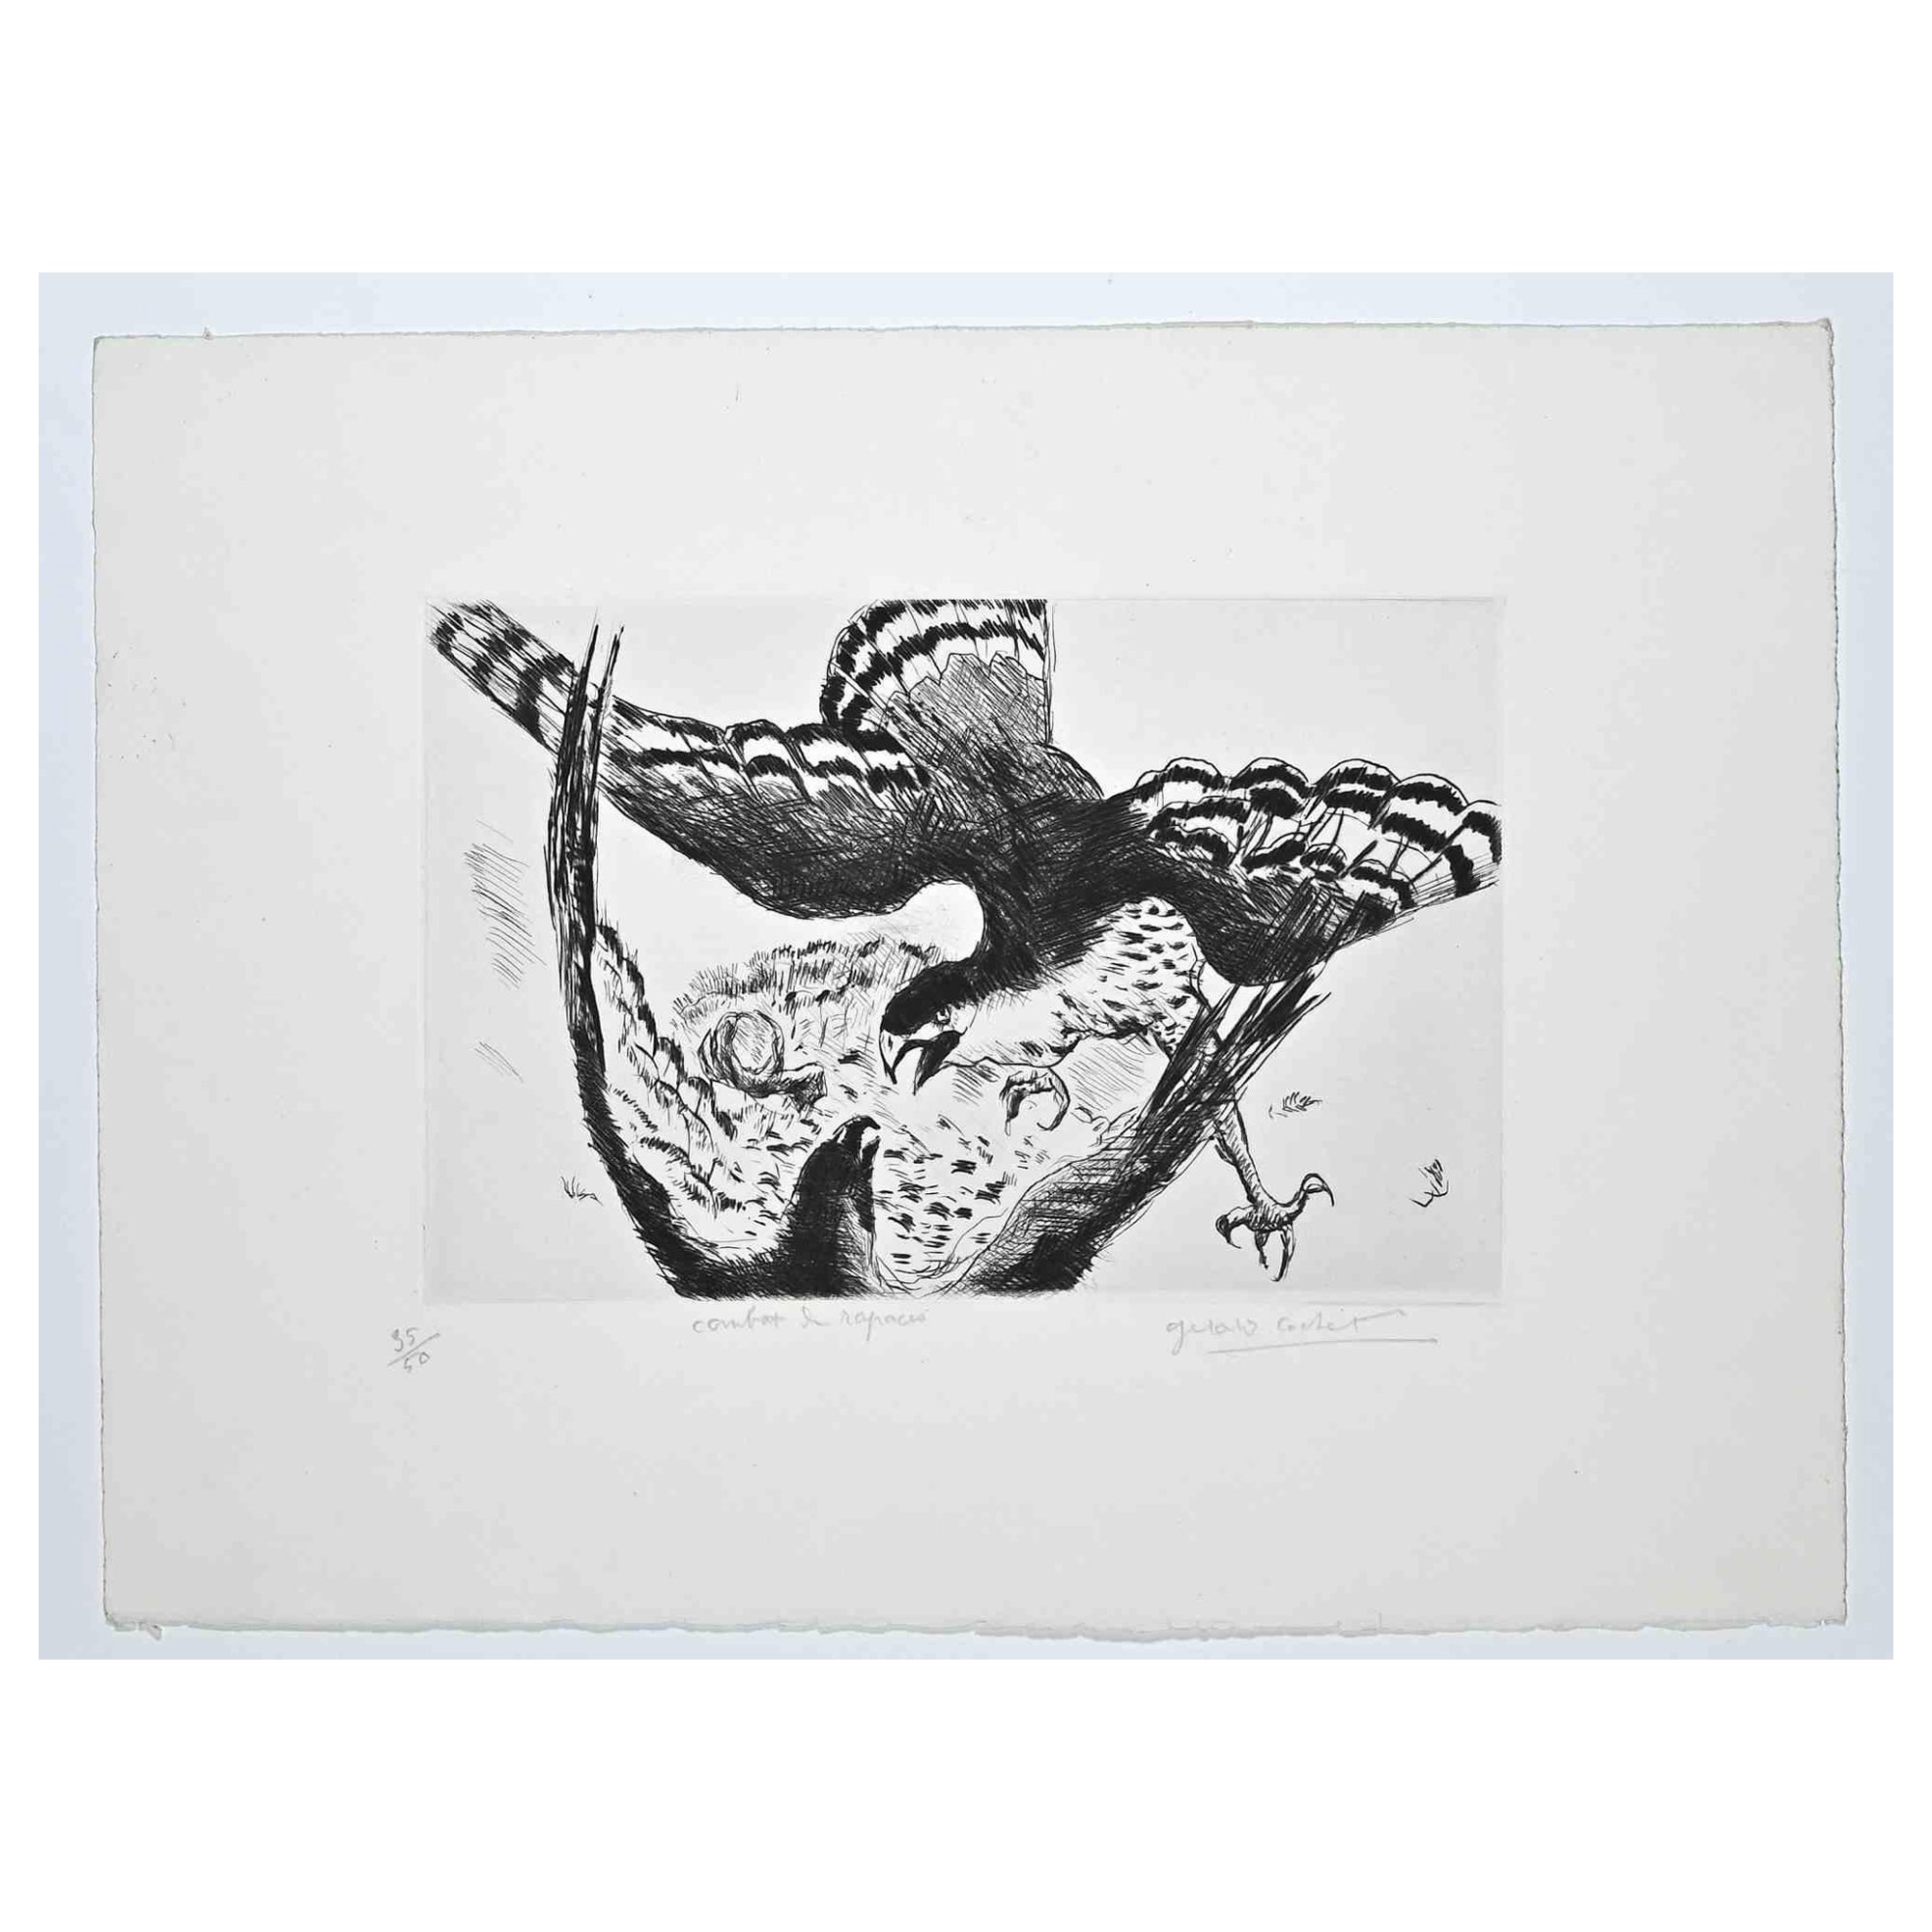 Fight est une gravure originale réalisée par Gérard Cochet au début du 20ème siècle.

Bonnes conditions.

Signé à la main.

Numéroté. Edition,35/50.

L'œuvre d'art est représentée par des touches douces dans une composition bien équilibrée.